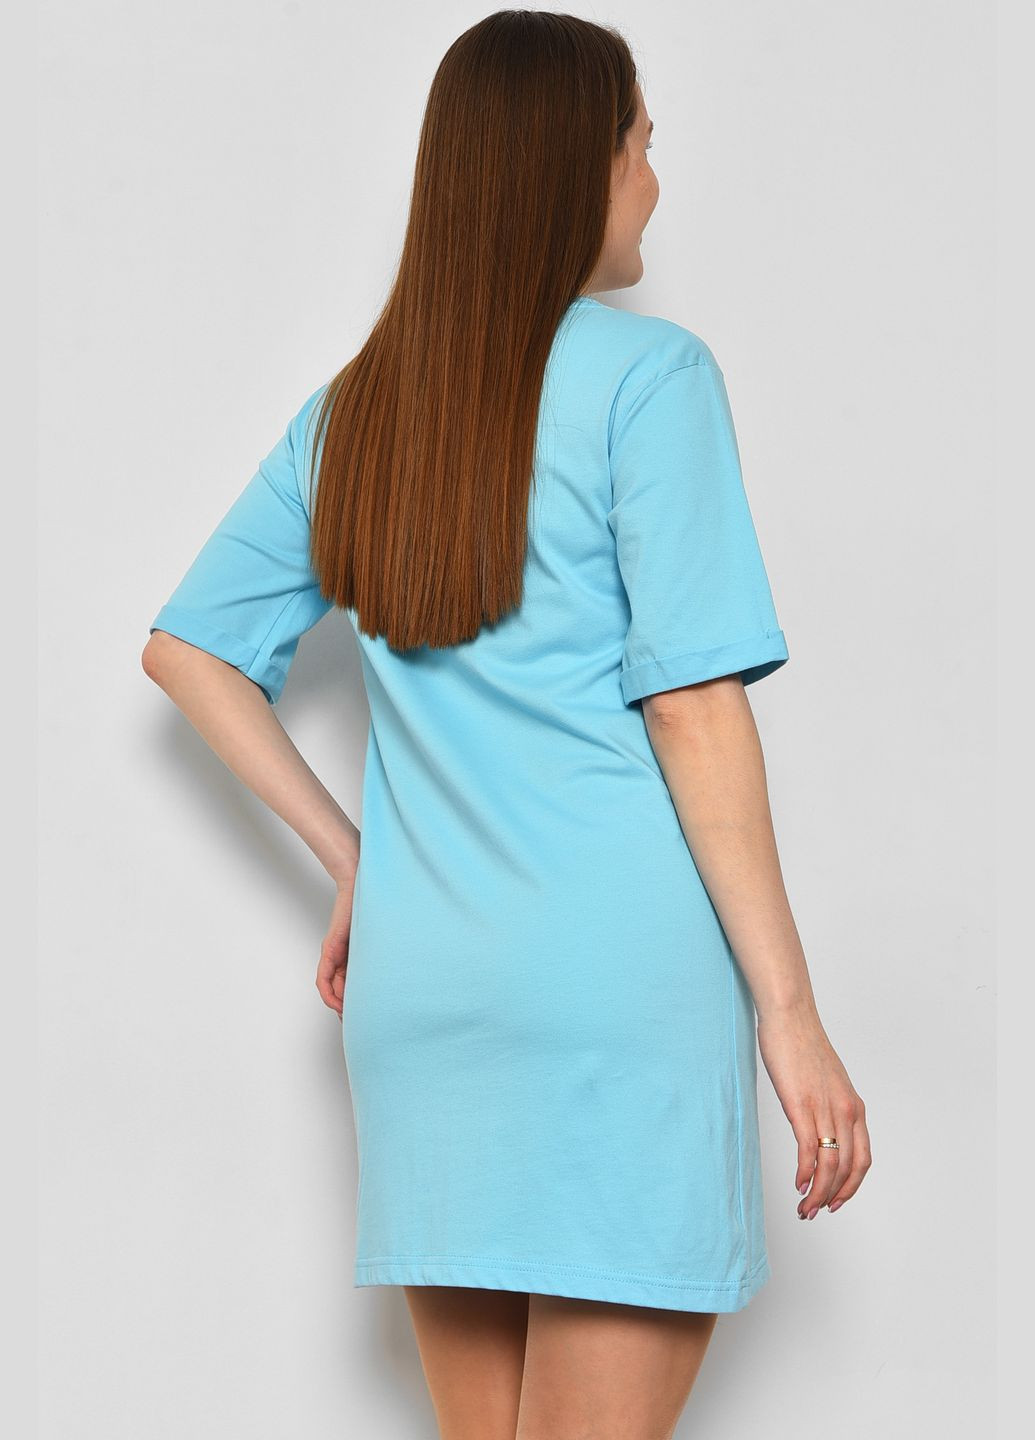 Жіноча туніка з тканини лакоста блакитного кольору. Let's Shop (292630397)